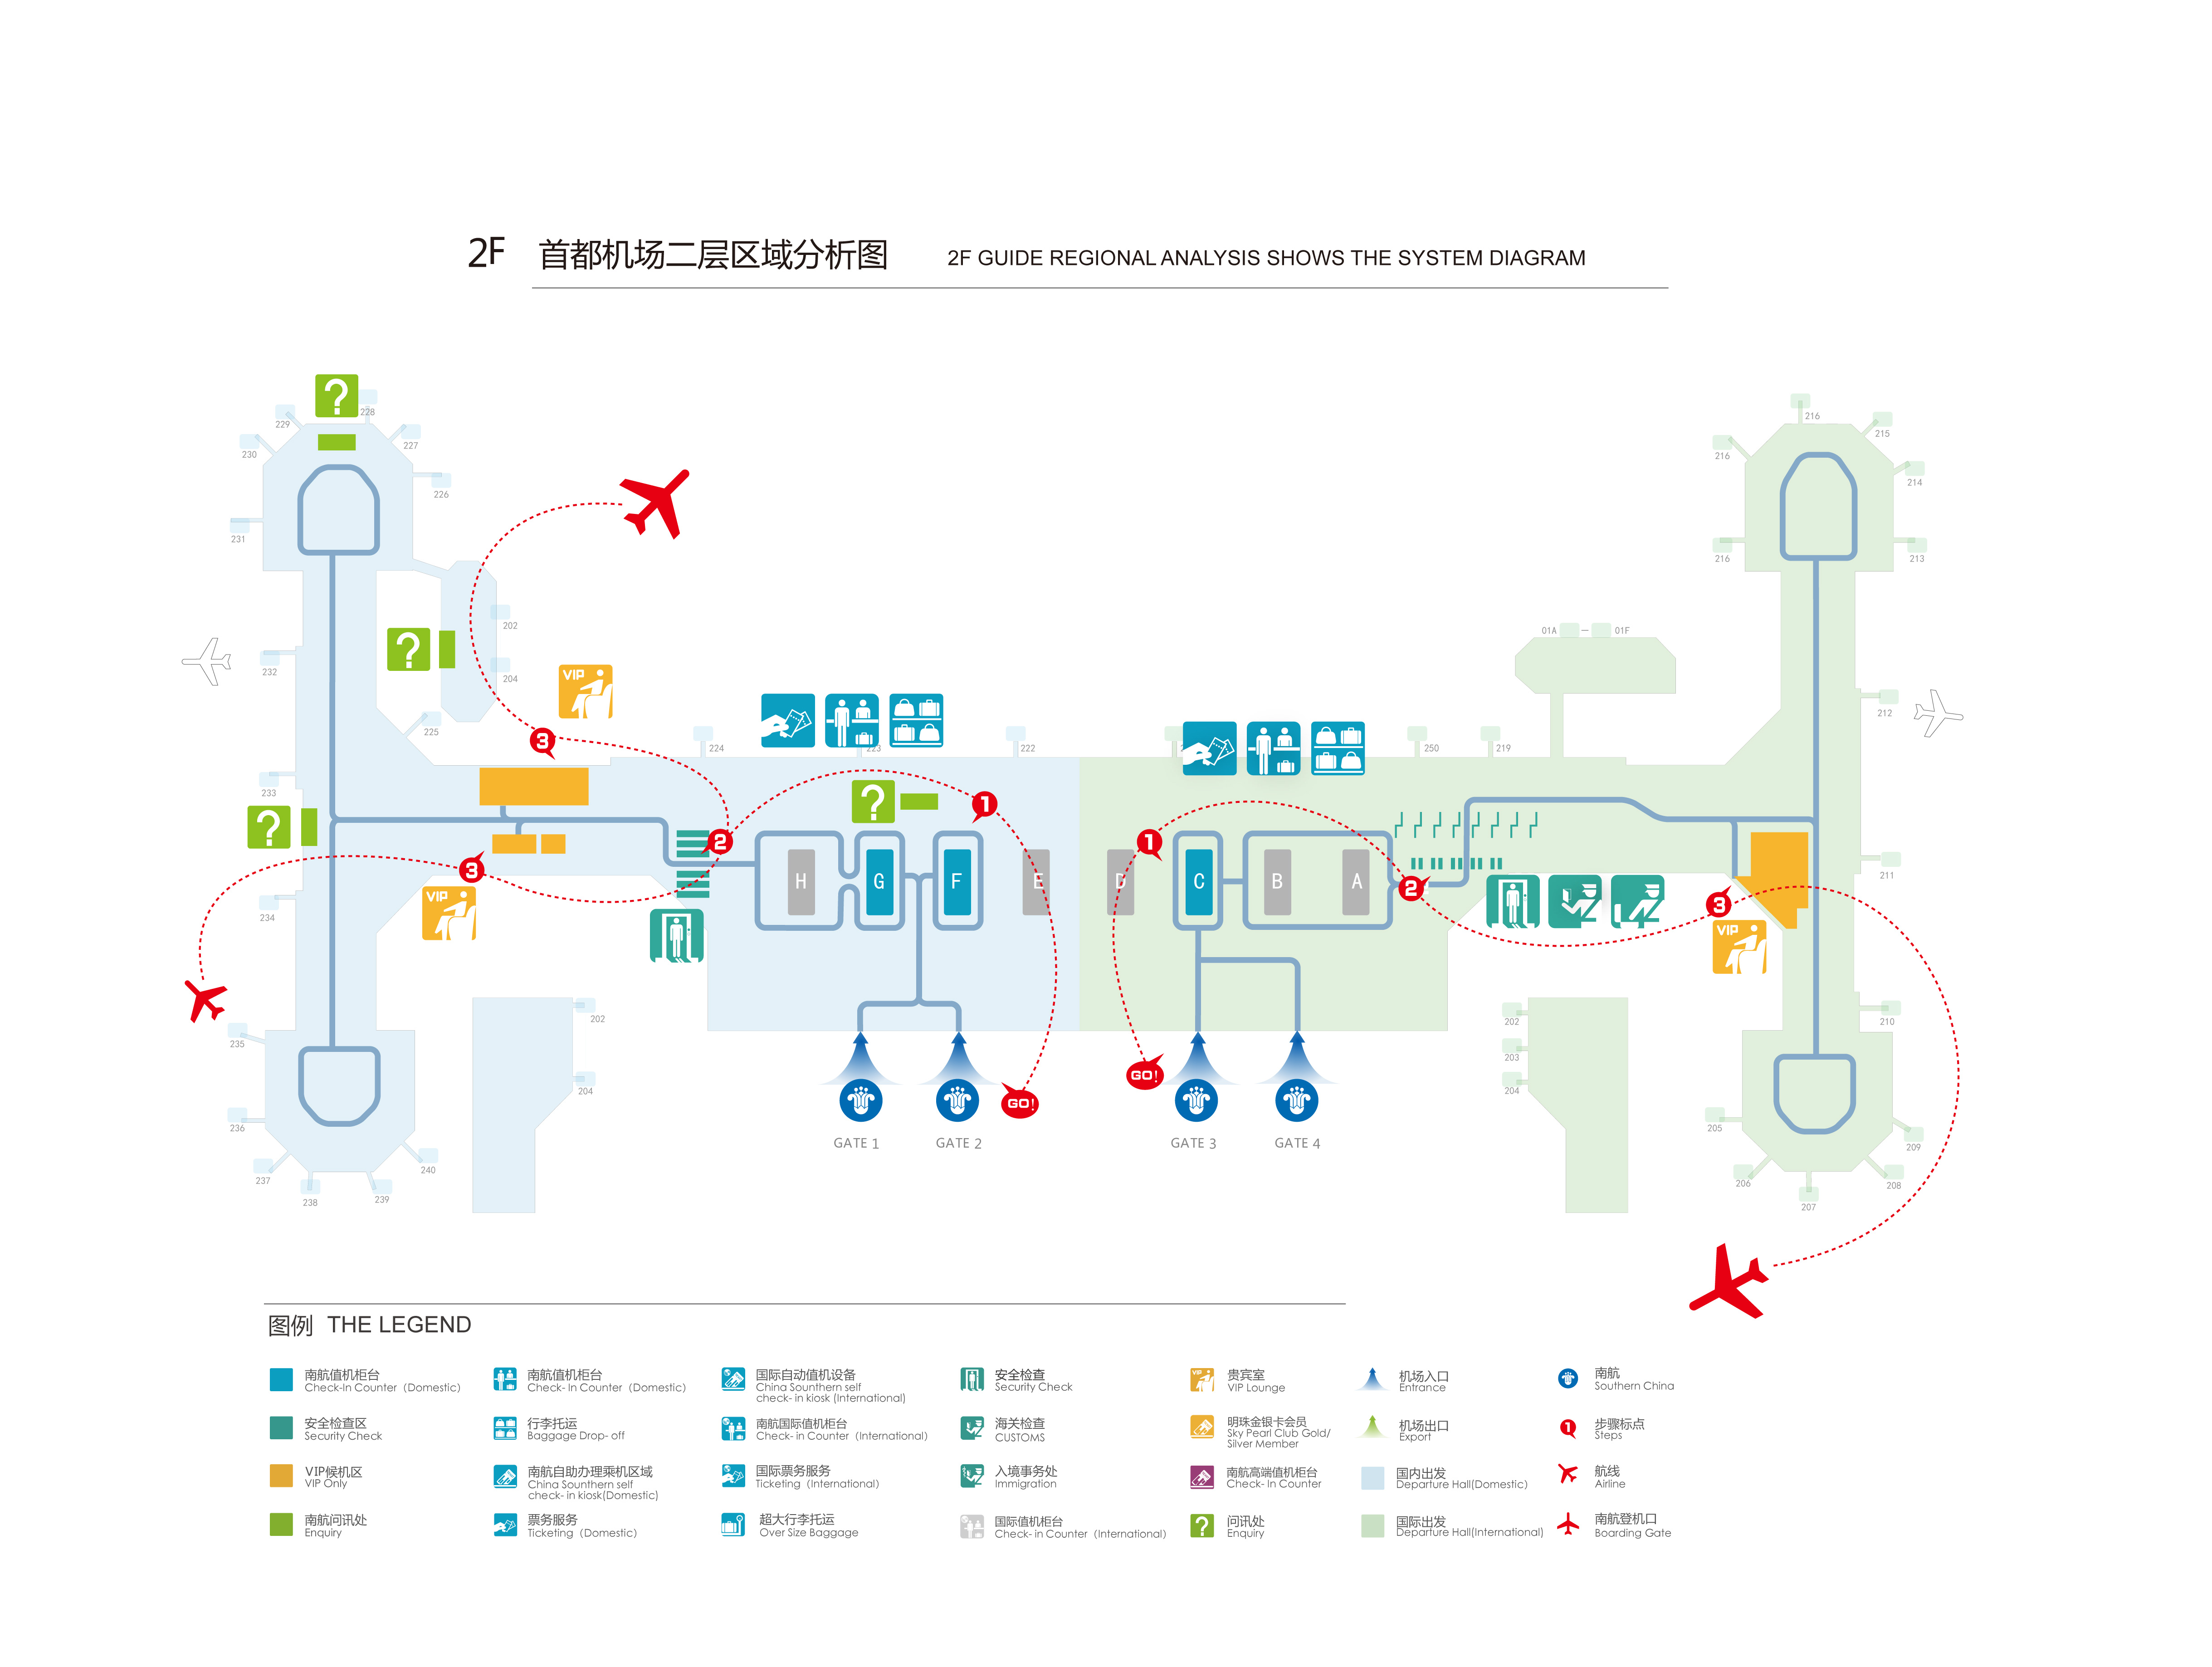 北京-中国机场-中国南方航空公司